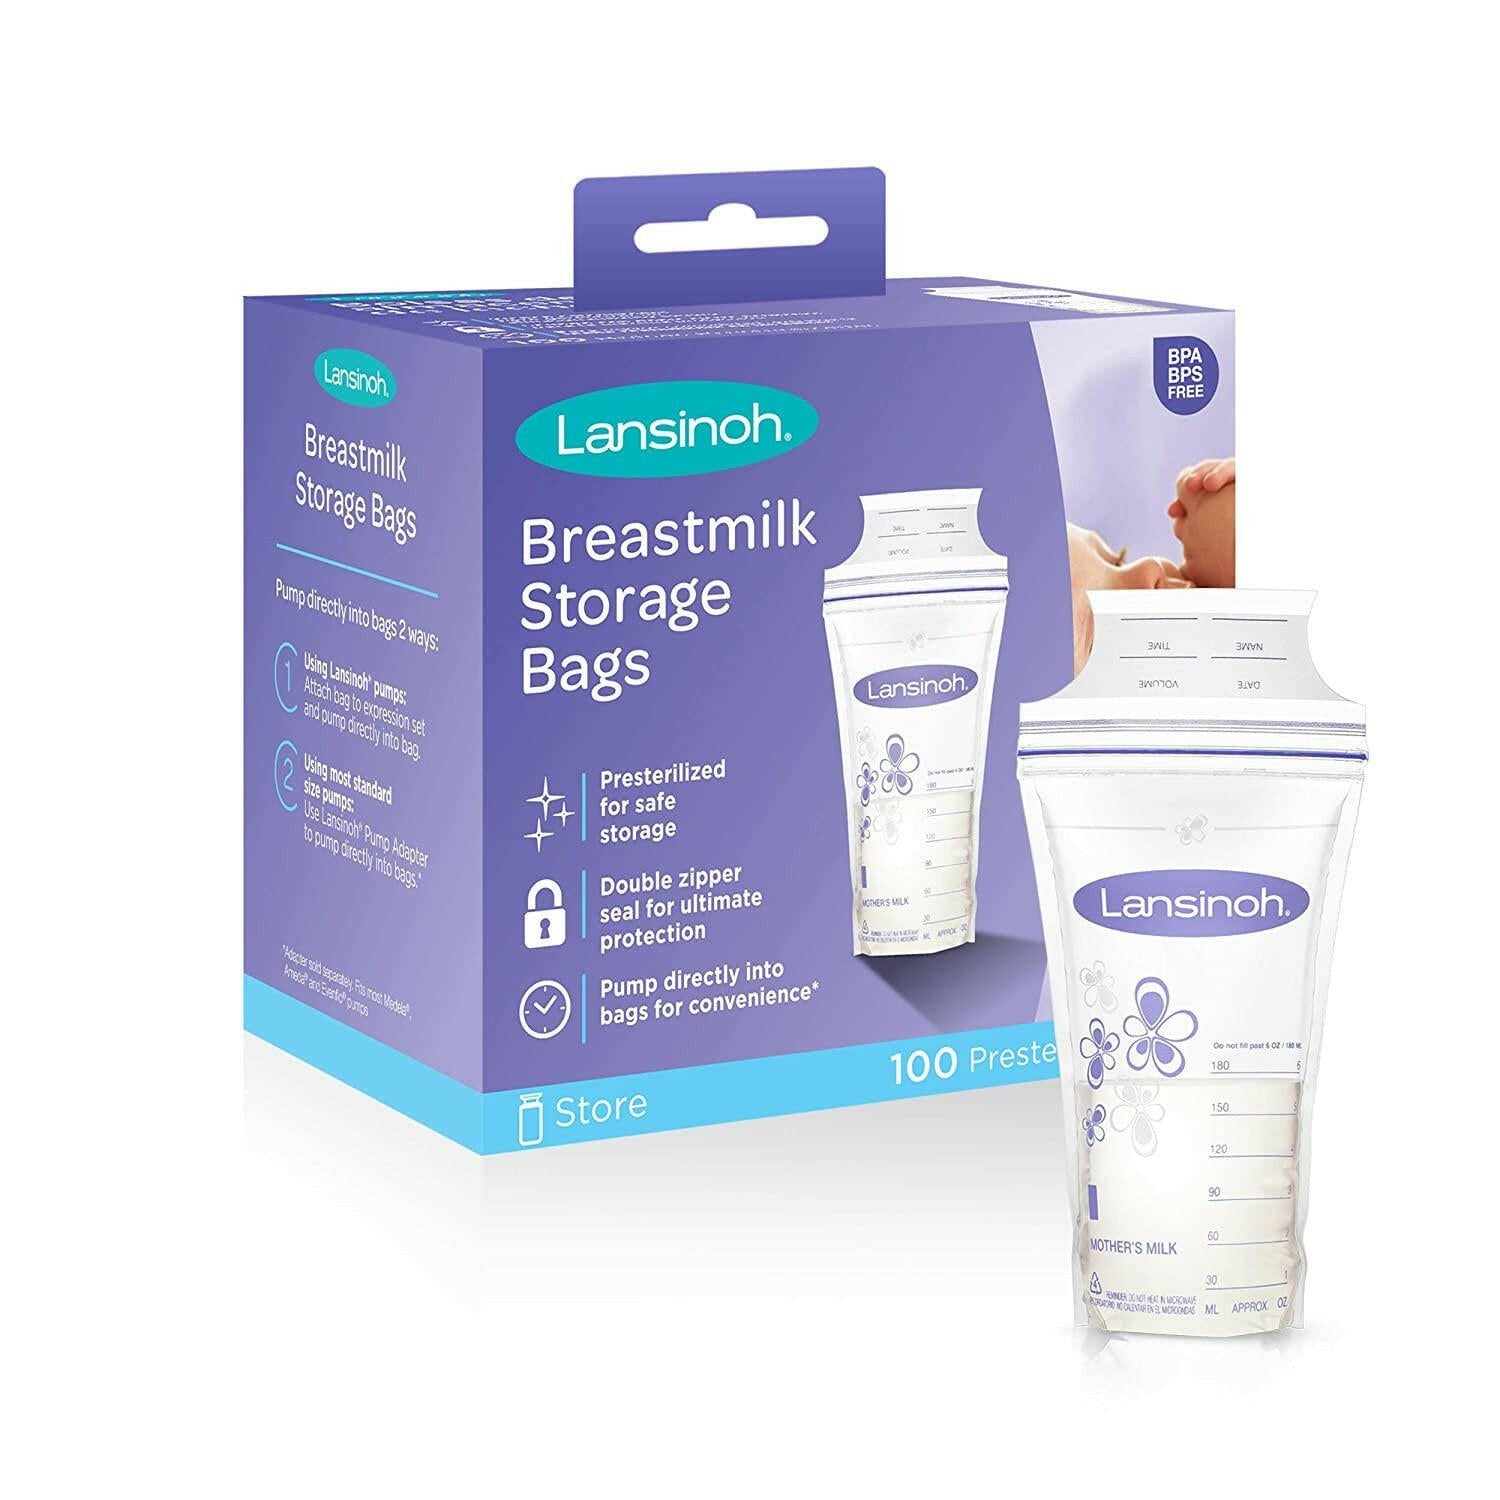 Lansinoh Breastmilk Storage Bags, 100 count.